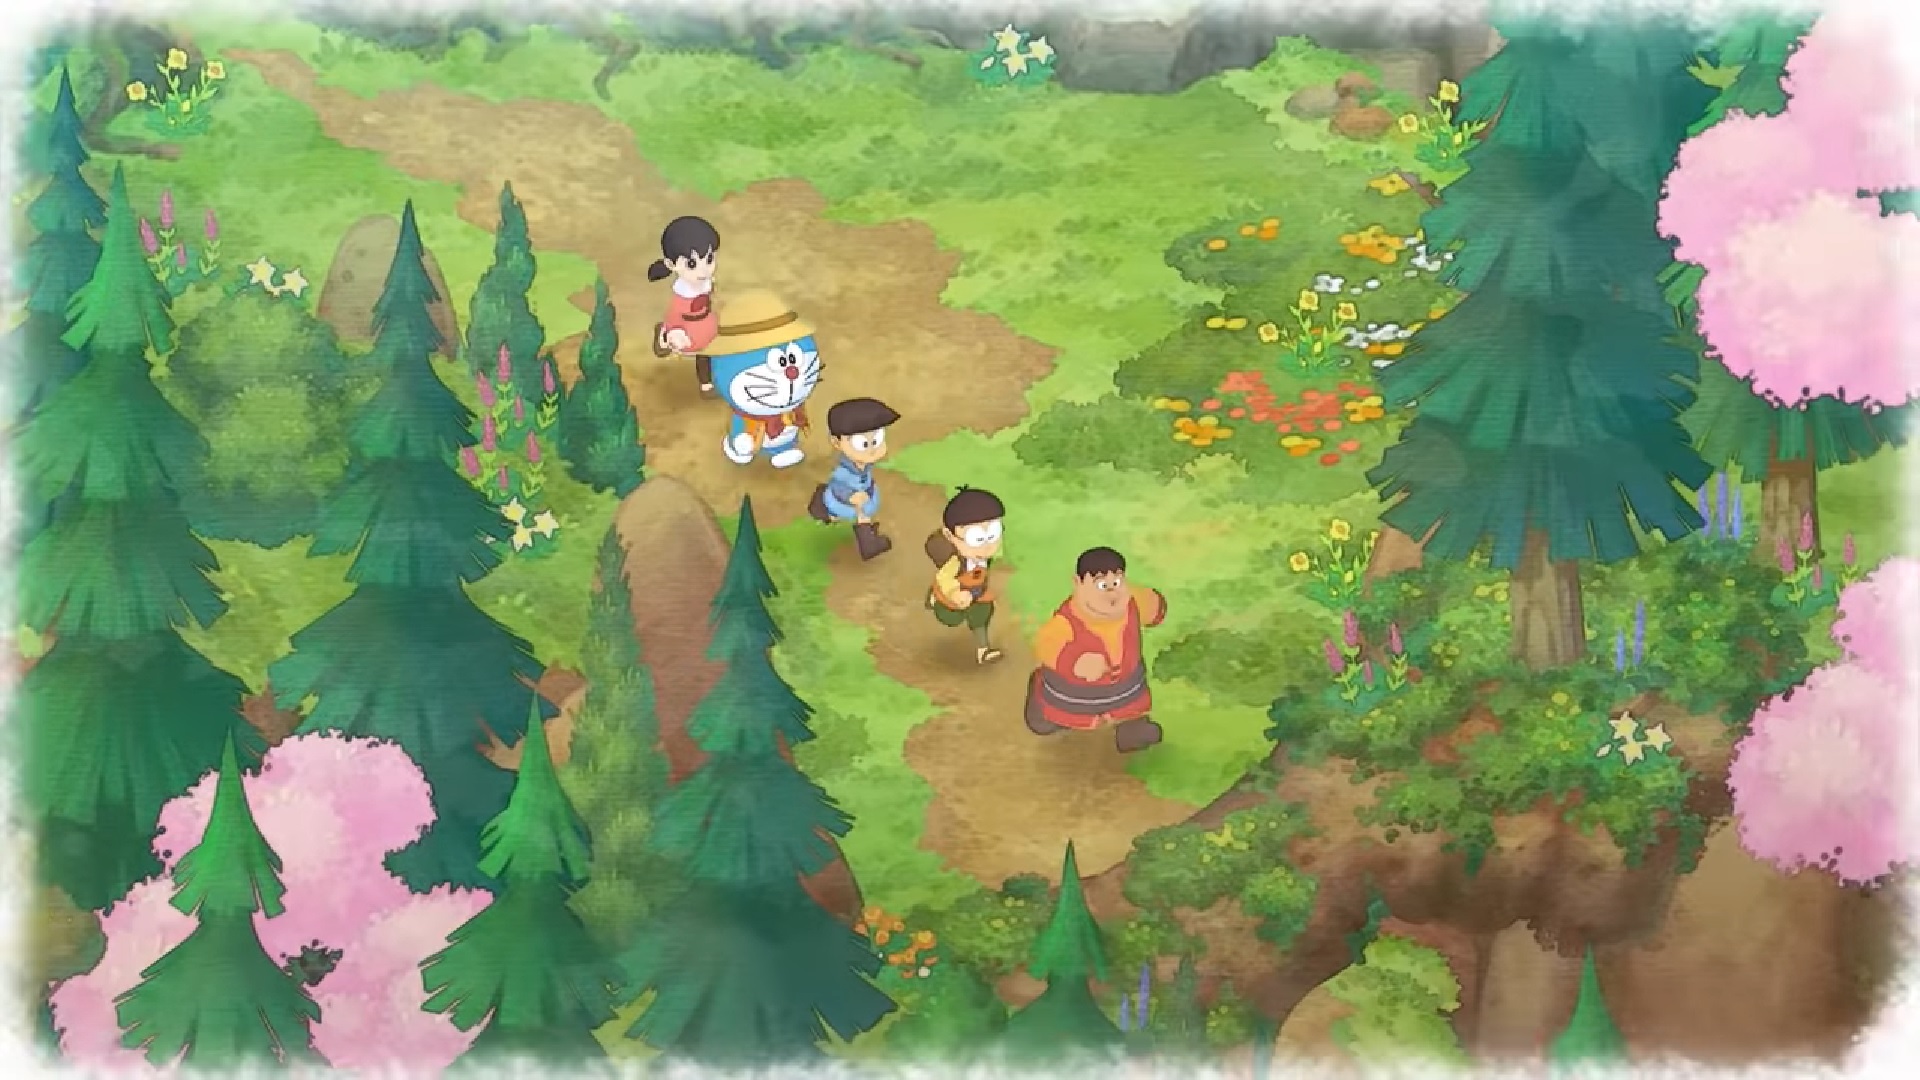 بازی Doraemon Story of Seasons  در غرب  پاییز برای رایانه شخصی و نینتندو سویچ عرضه میشود